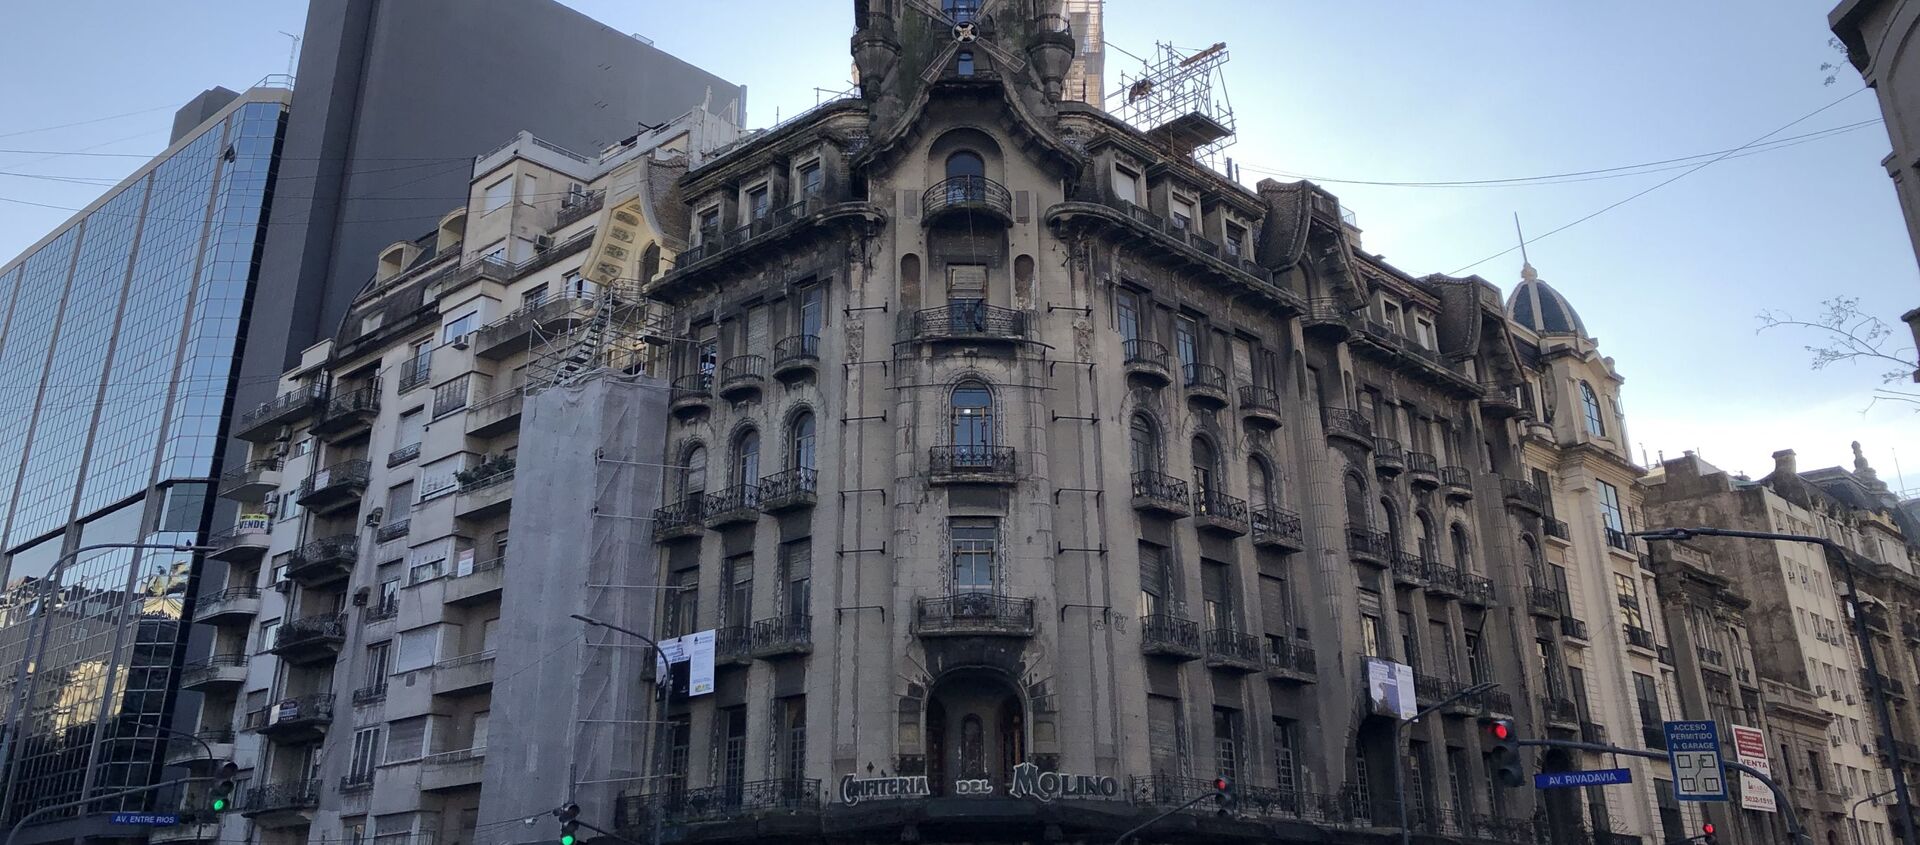 Edificio de la Confitería del Molino en Buenos Aries, en pleno proceso de restauración - Sputnik Mundo, 1920, 29.07.2019